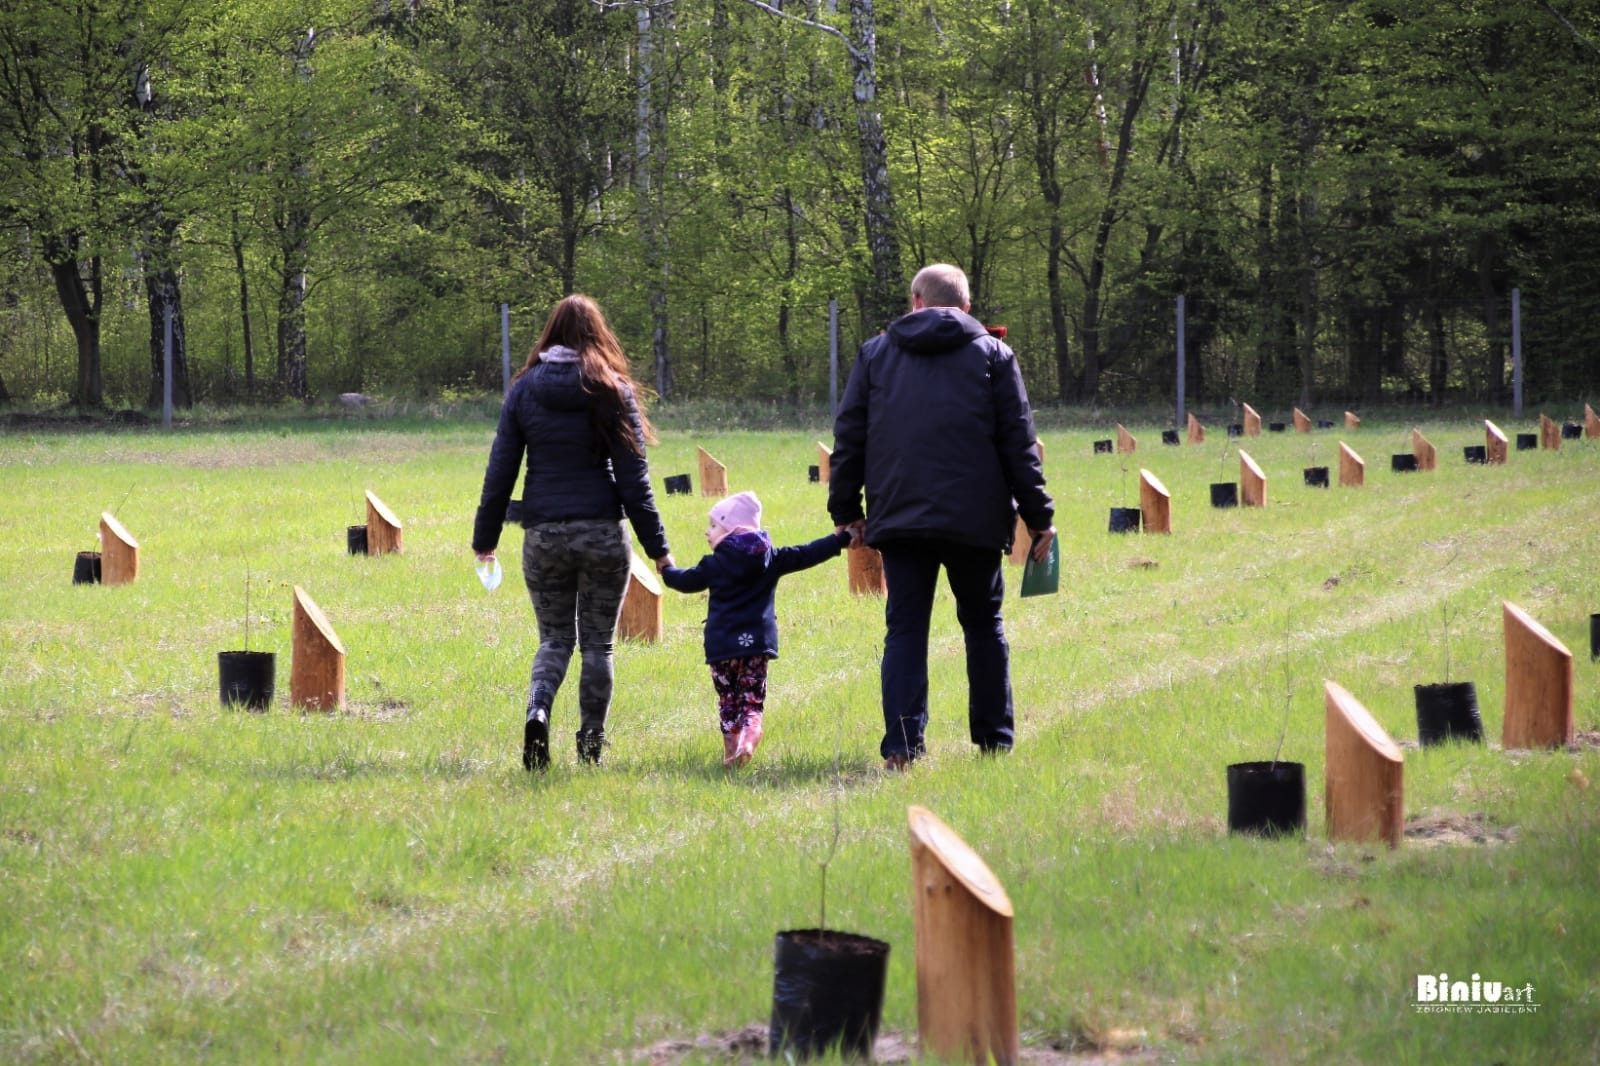 Fot. Zbigniew Jasielski. Fotografia przedstawia rodzinę na powierzchni lasu Nowożeńców i Drzew Okolicznościowych.